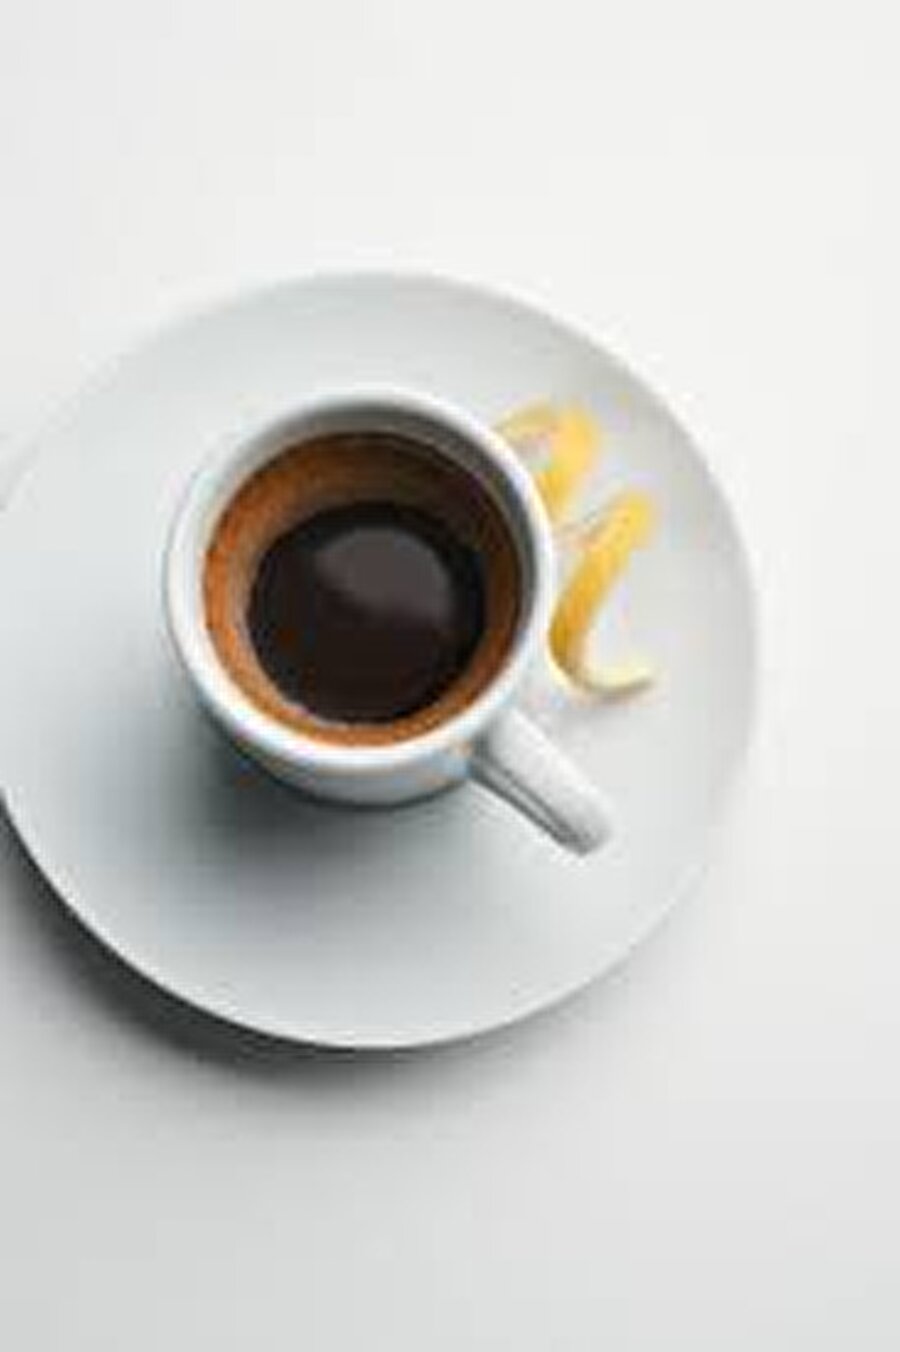 Espresso Romano + İtalya

                                    
                                    Bir dilim limon veya limon kabuğu ile servis edilen tek shot espresso kahvedir. Limonun daha ferah bir tat verdiği ve kahveyi hafiflettiğine inanılır.
                                
                                